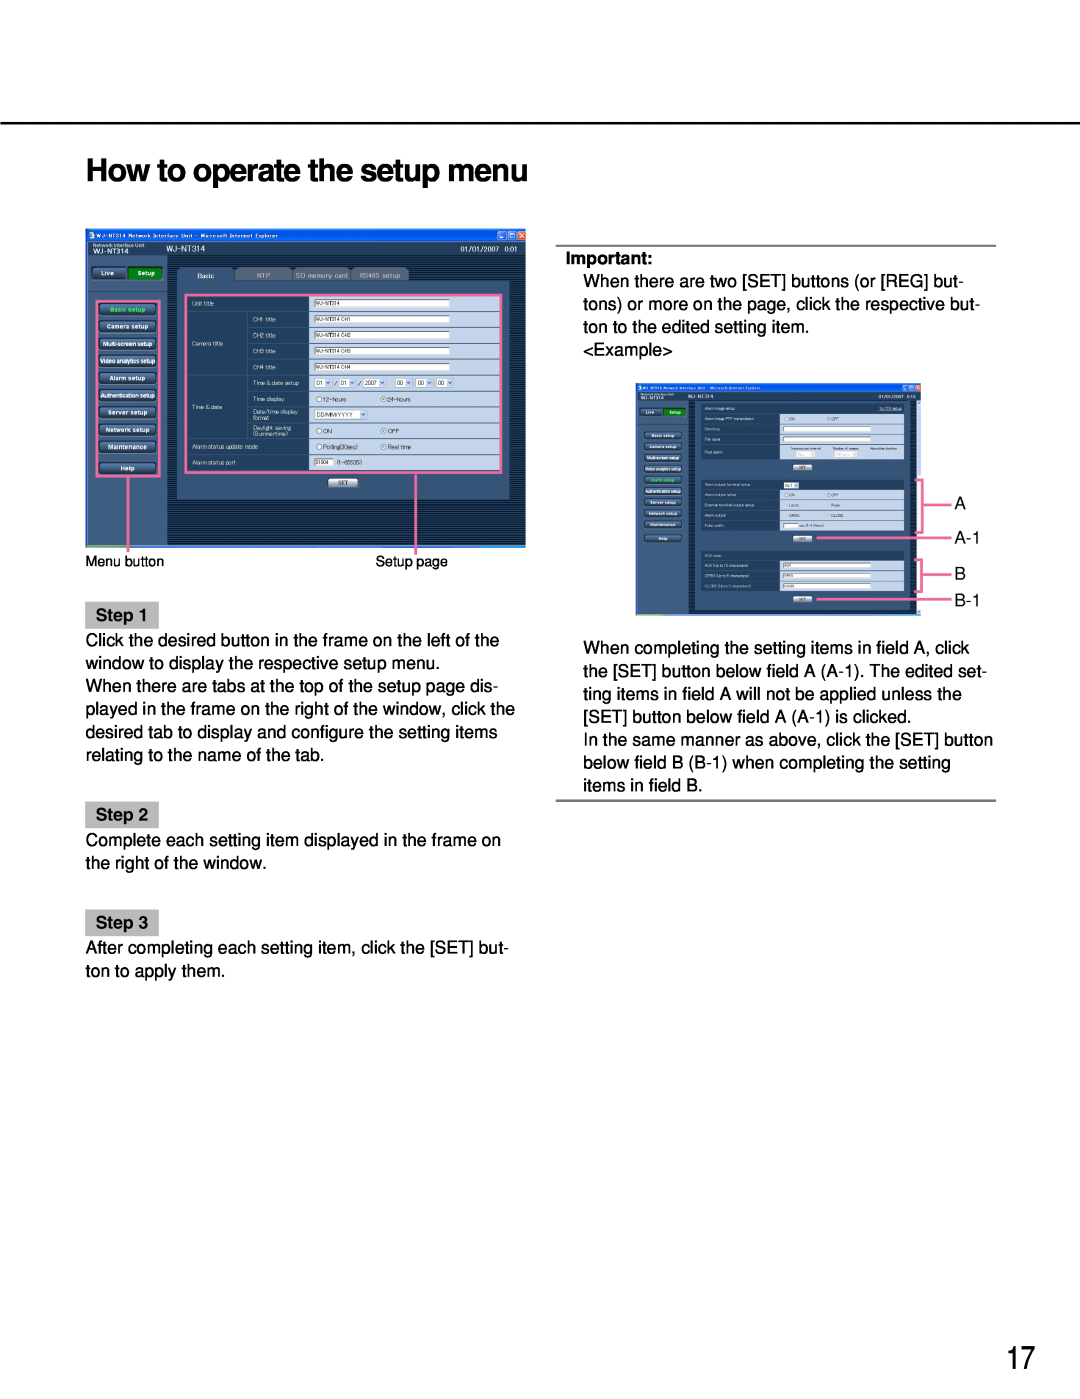 Panasonic WJ-NT314 manual How to operate the setup menu, Step 